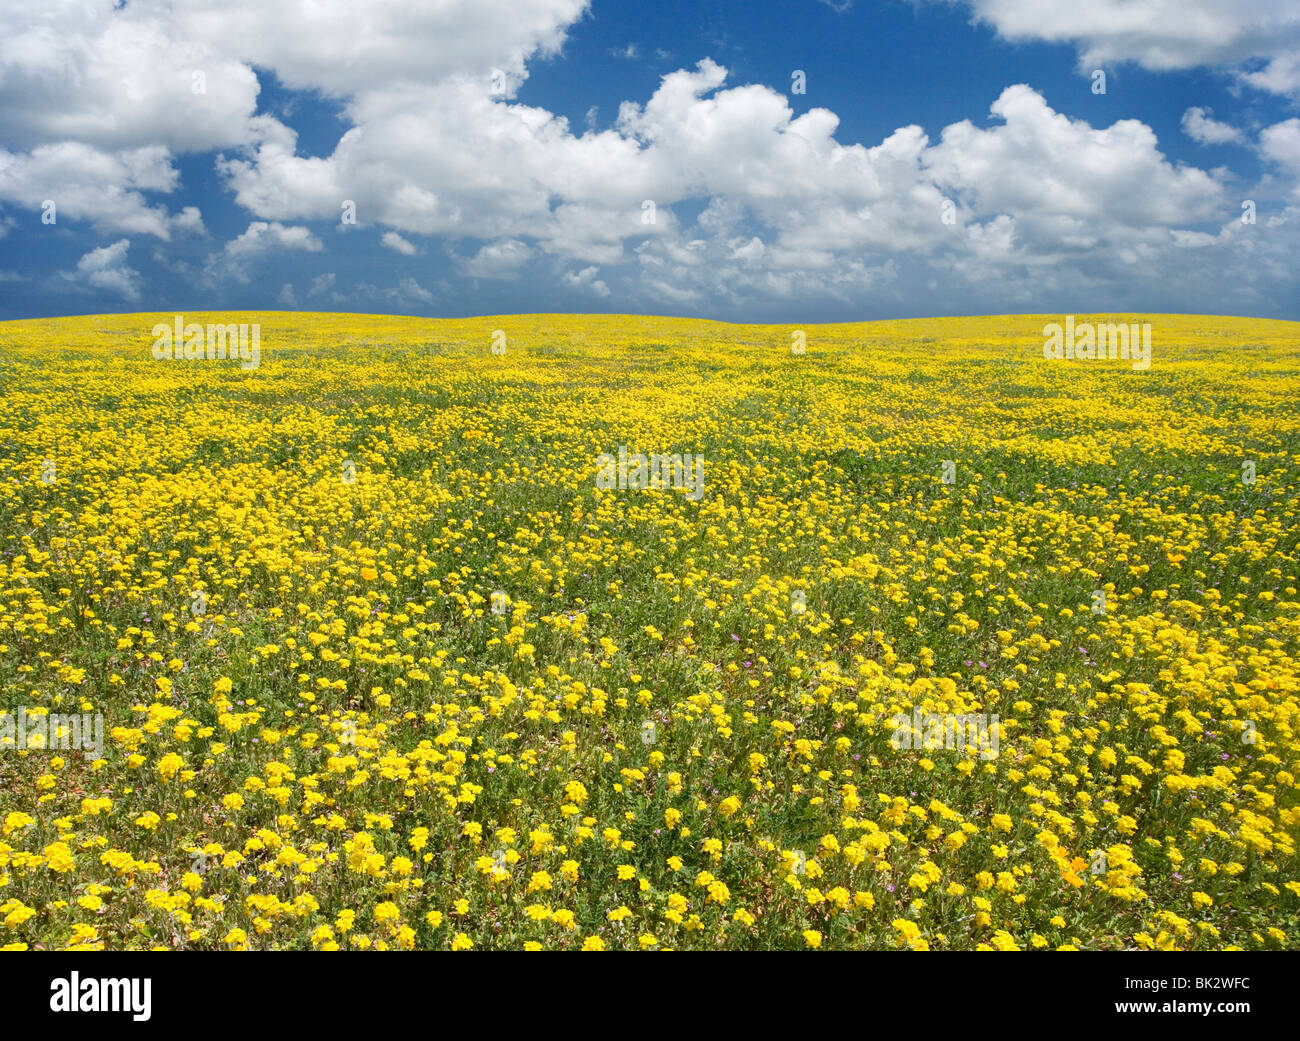 Un grand champ de fleurs sauvages jaune qui va à l'infini. Le photographe retouché la ligne d'horizon et le ciel. Banque D'Images